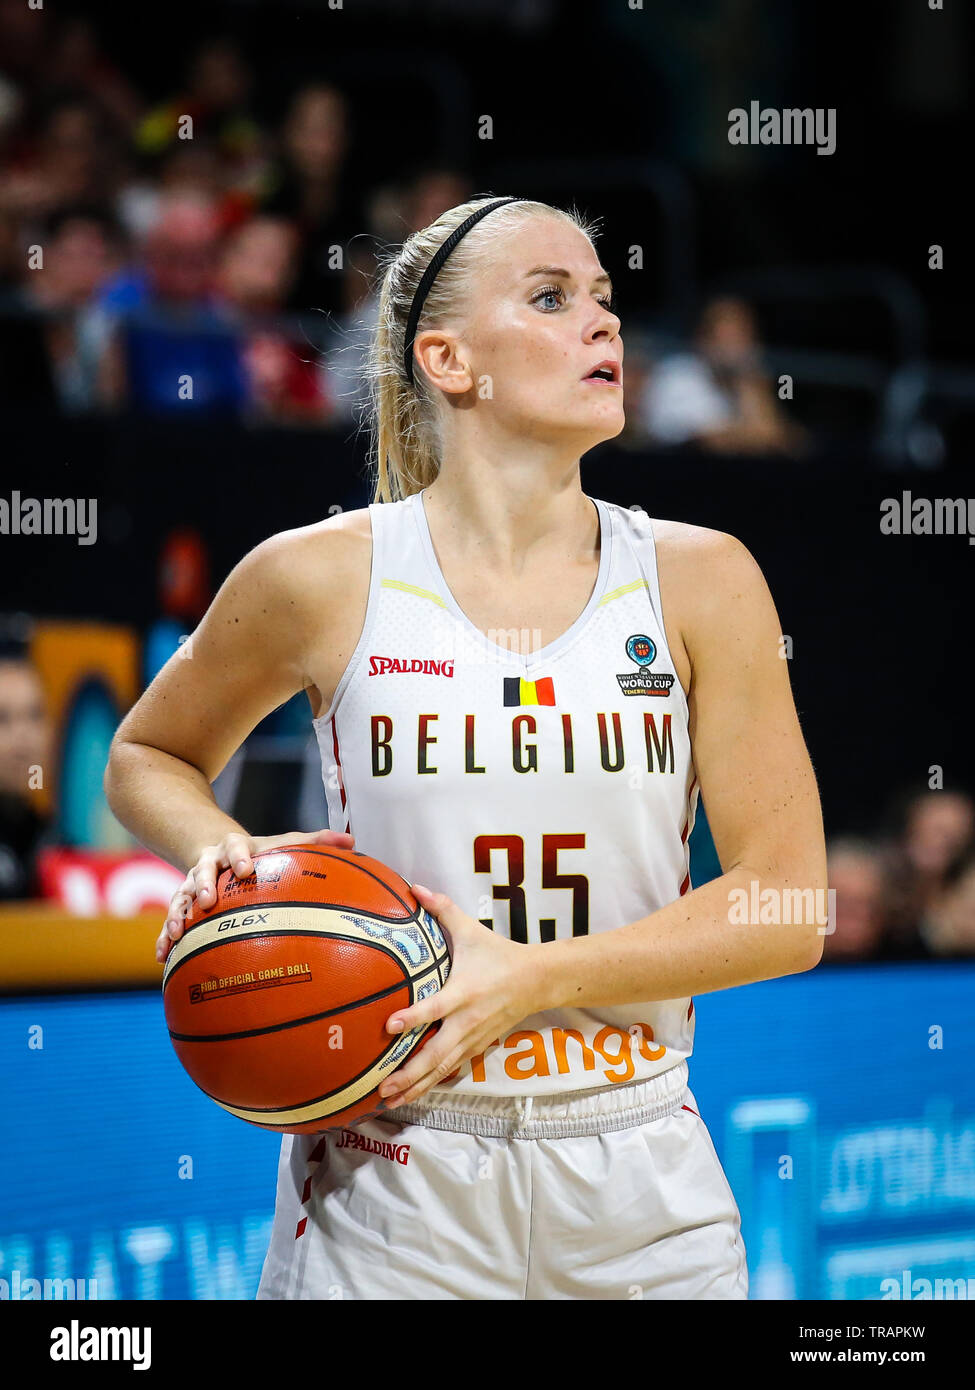 Tenerife, Espagne, le 29 septembre 2018 : joueur de basket-ball belge Julie Vanloo en action au cours de basket-ball match Belgique contre les USA Banque D'Images